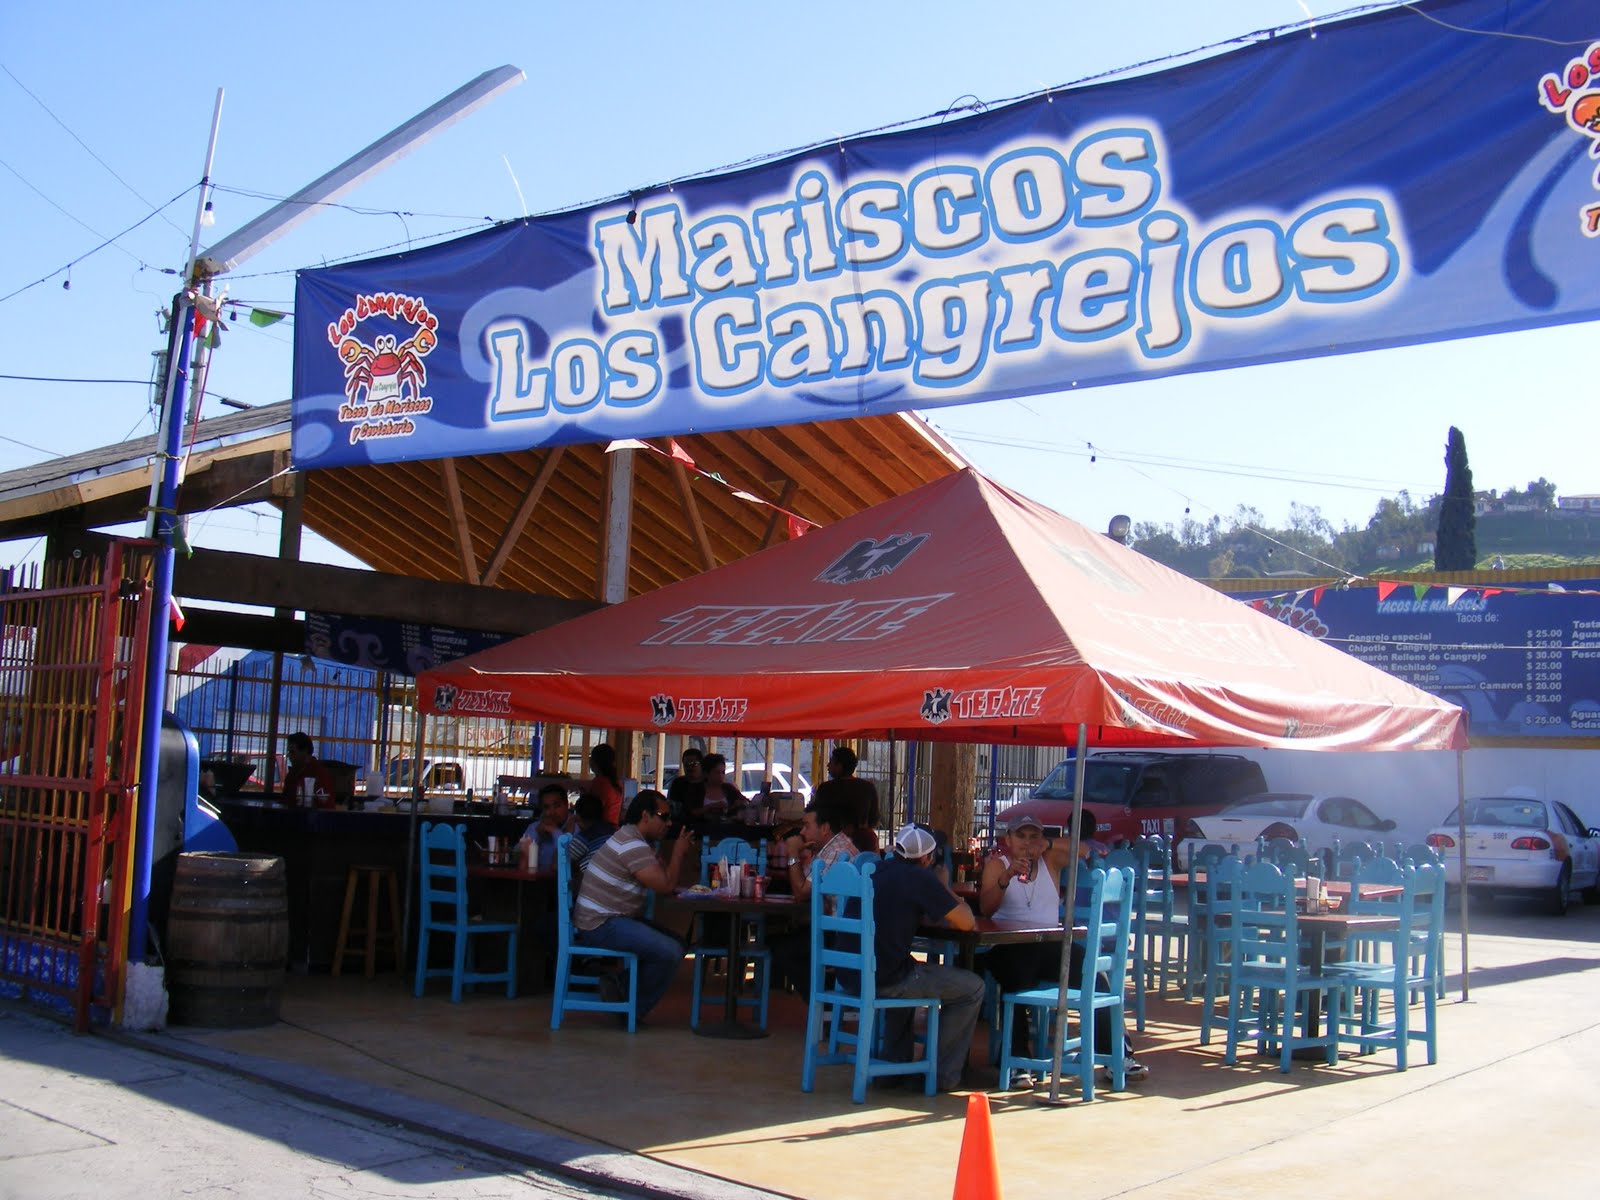 Street Gourmet LA: Los Cangrejos, Tijuana,BC: Make a Pit Stop at the Urban  Crab Taco King